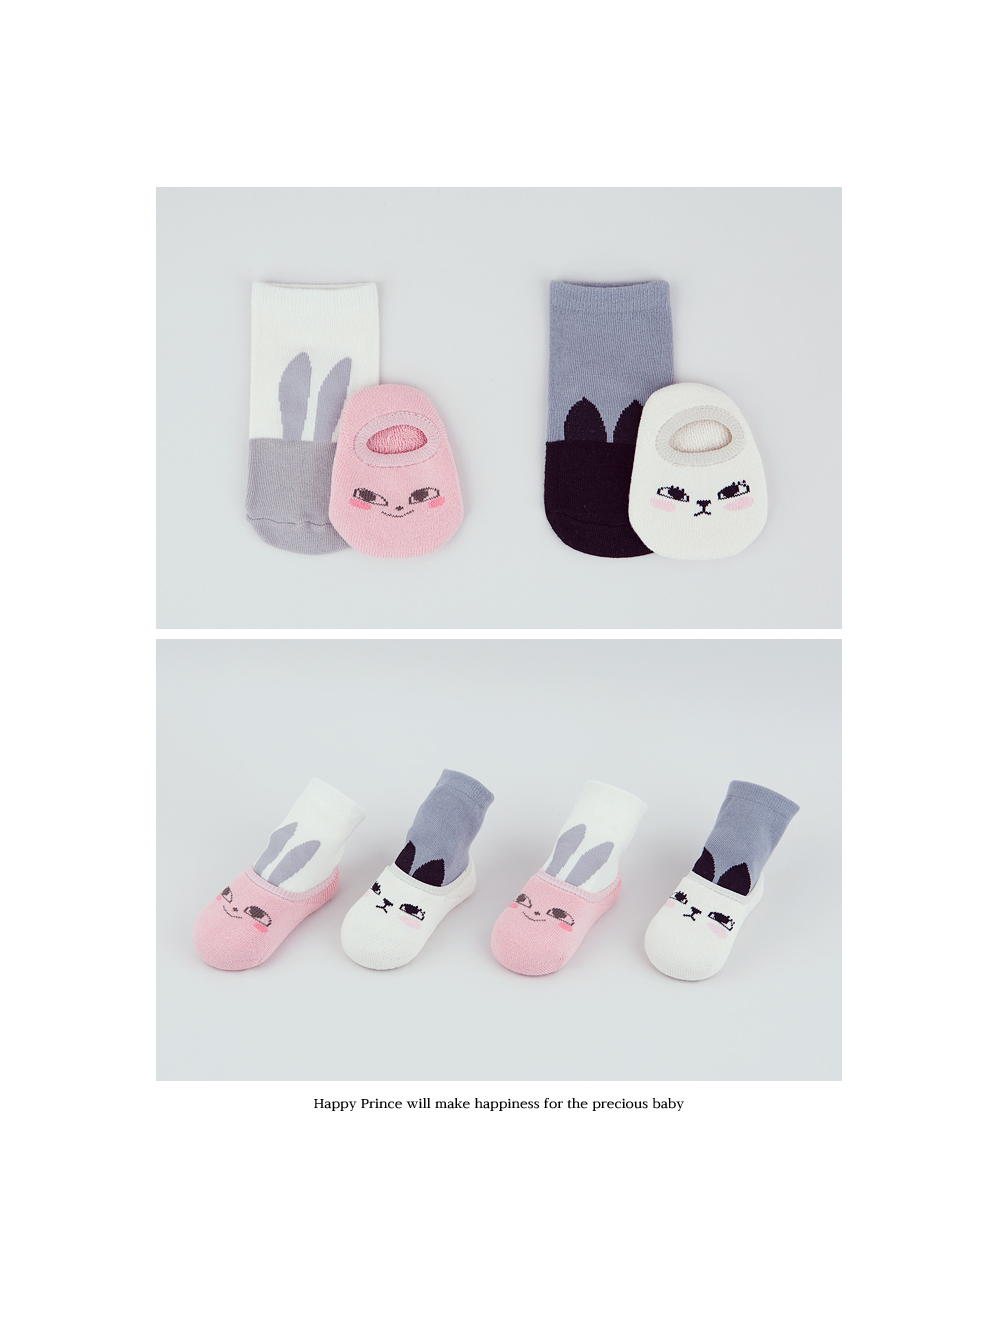 韓國 Happy Prince 插畫風長耳動物嬰童襪兩件組 米色短襪組S